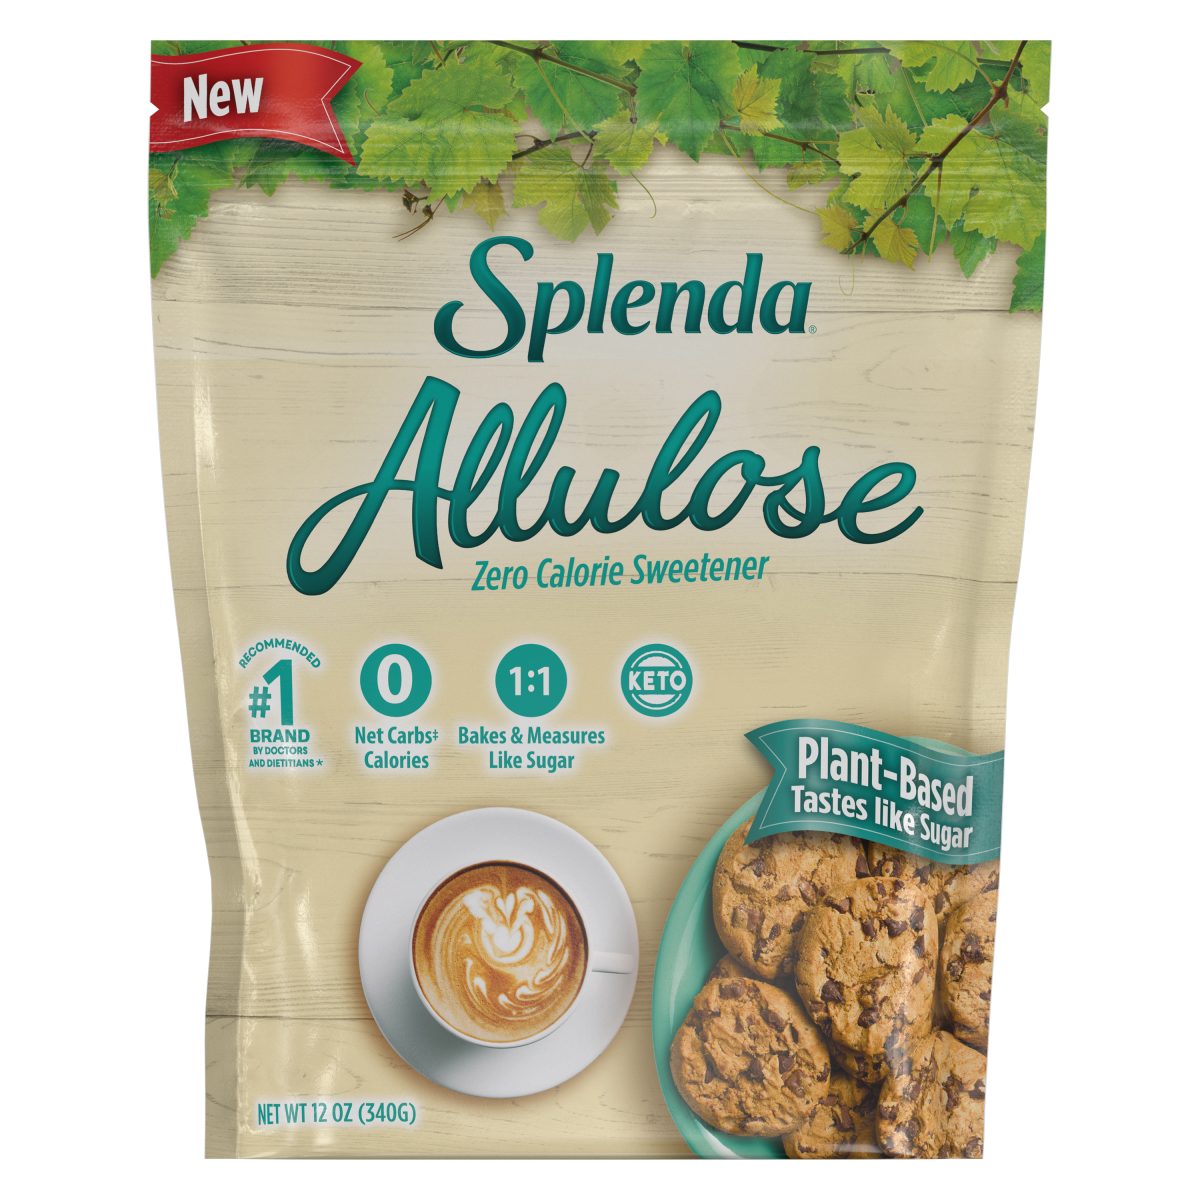 SPLENDA® endulzante granulado con Alulosa de 6/12oz bolsas